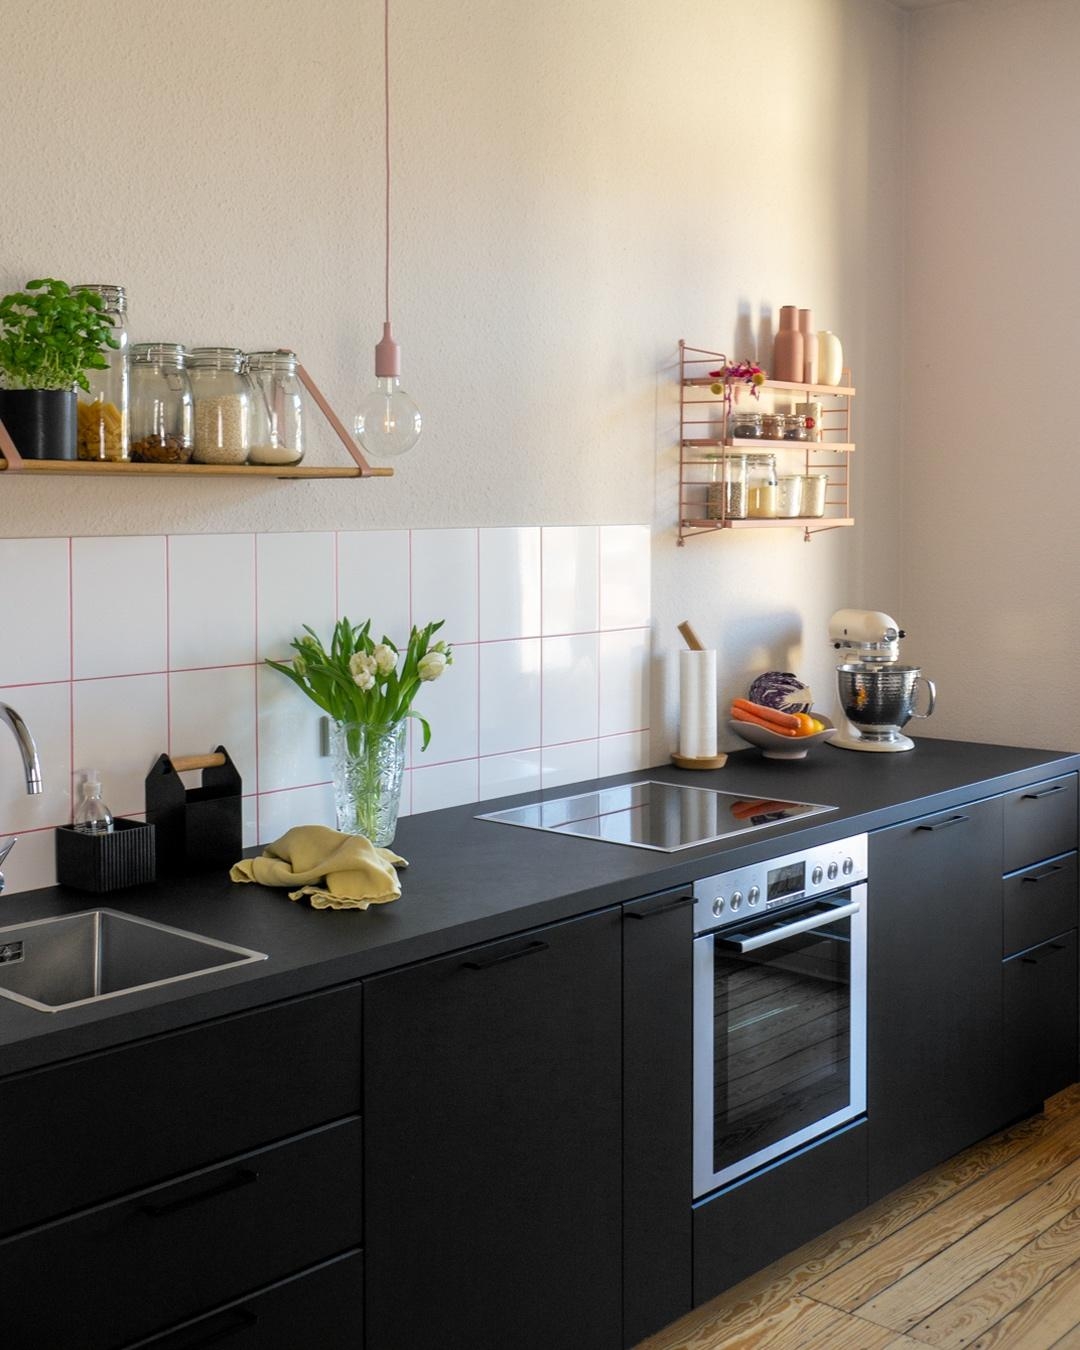 Mein Lieblingsort in der Wohnung, die Küche.

#interiør #interiordesign #kitchen #beigekitchen #kitchendesign
